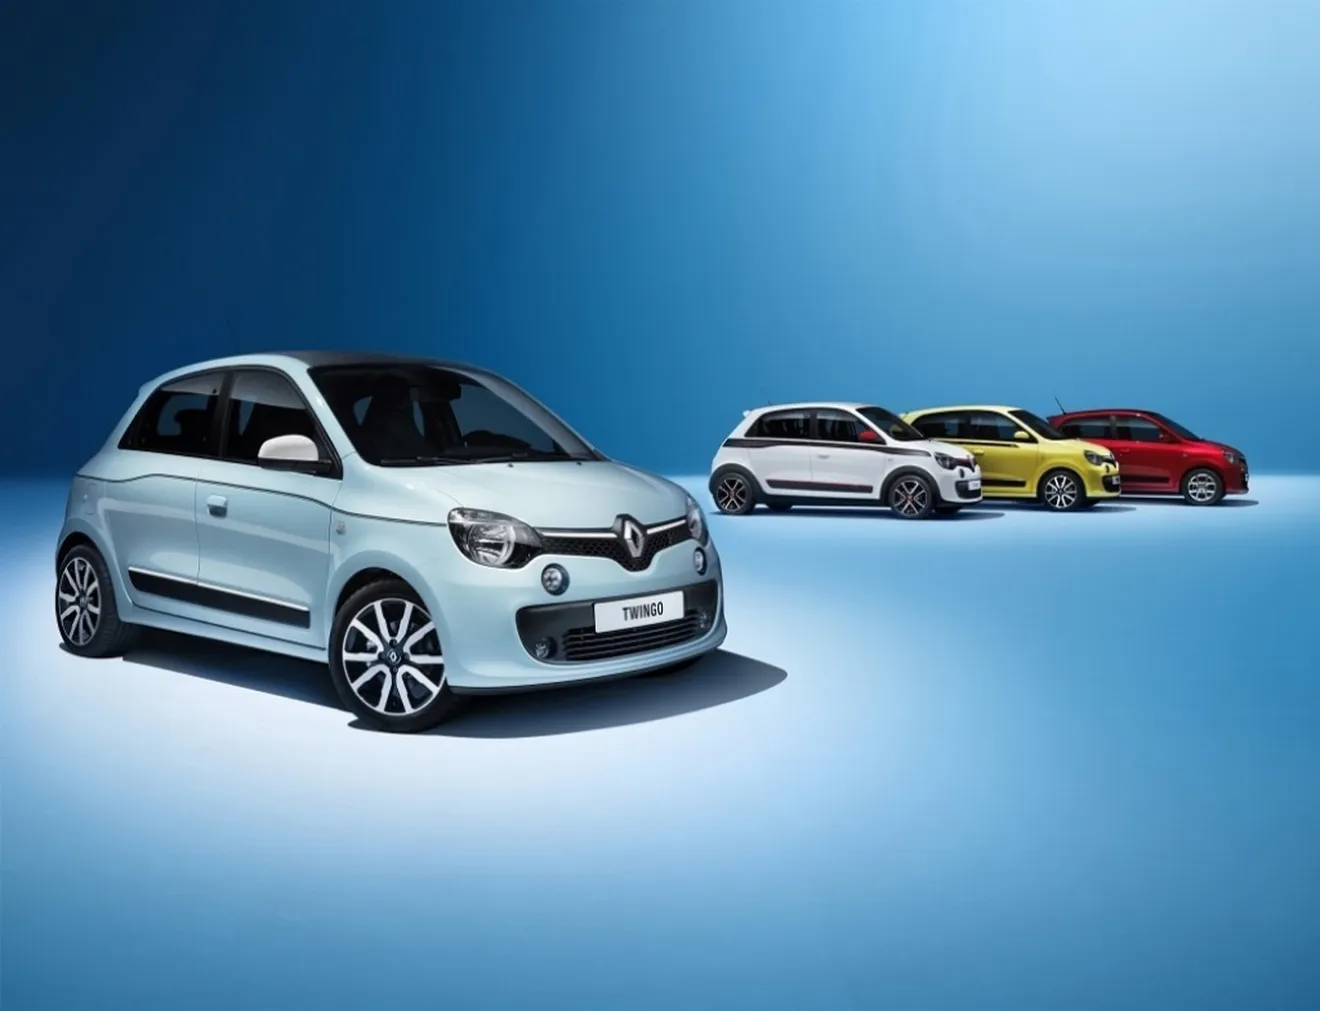 Renault confirma un Twingo de alto rendimiento pero no llevará las siglas RS